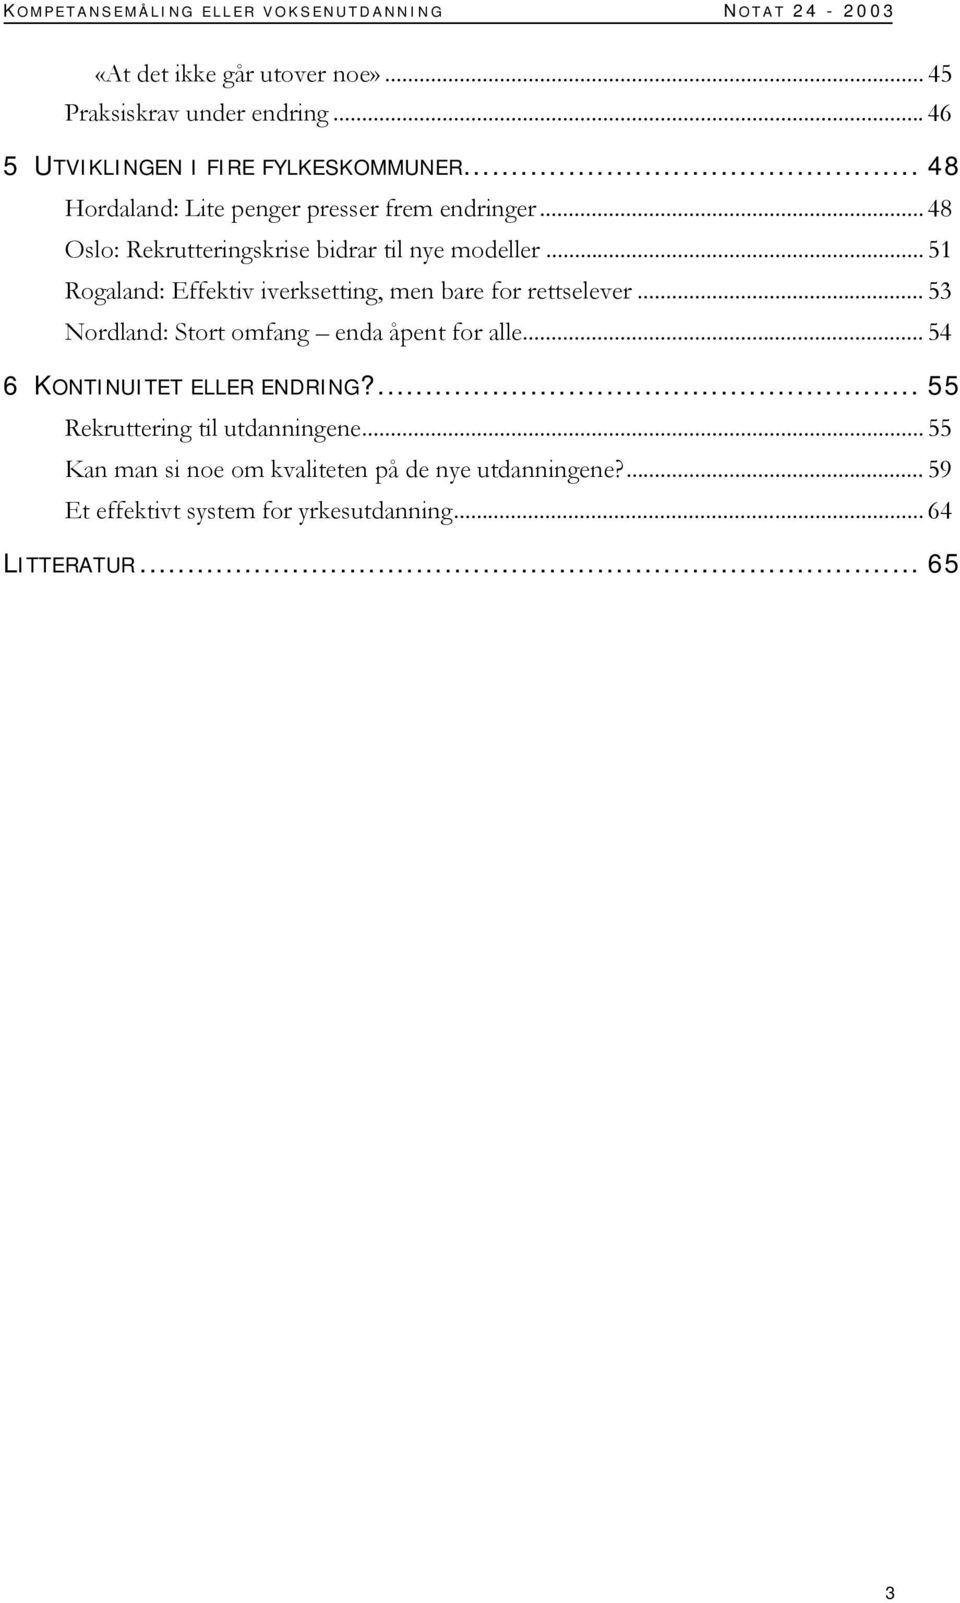 .. 48 Oslo: Rekrutteringskrise bidrar til nye modeller... 51 Rogaland: Effektiv iverksetting, men bare for rettselever.